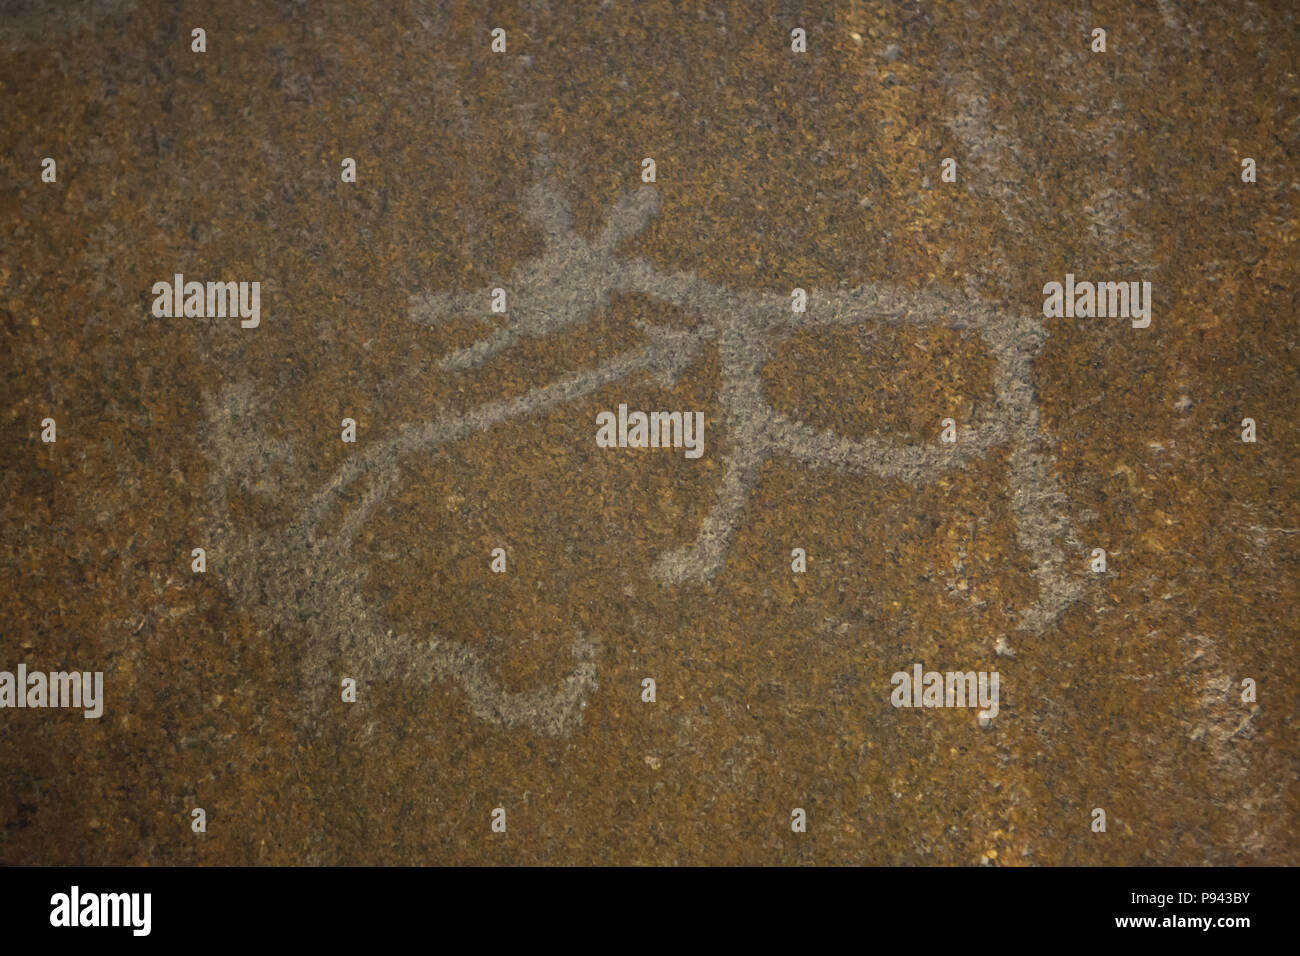 Bärenjagd im Urwald petroglyph an besov Nos Cape (Demon's Nase) auf Onega See dargestellt, das jetzt in der Eremitage in Sankt Petersburg, Russland. Stockfoto